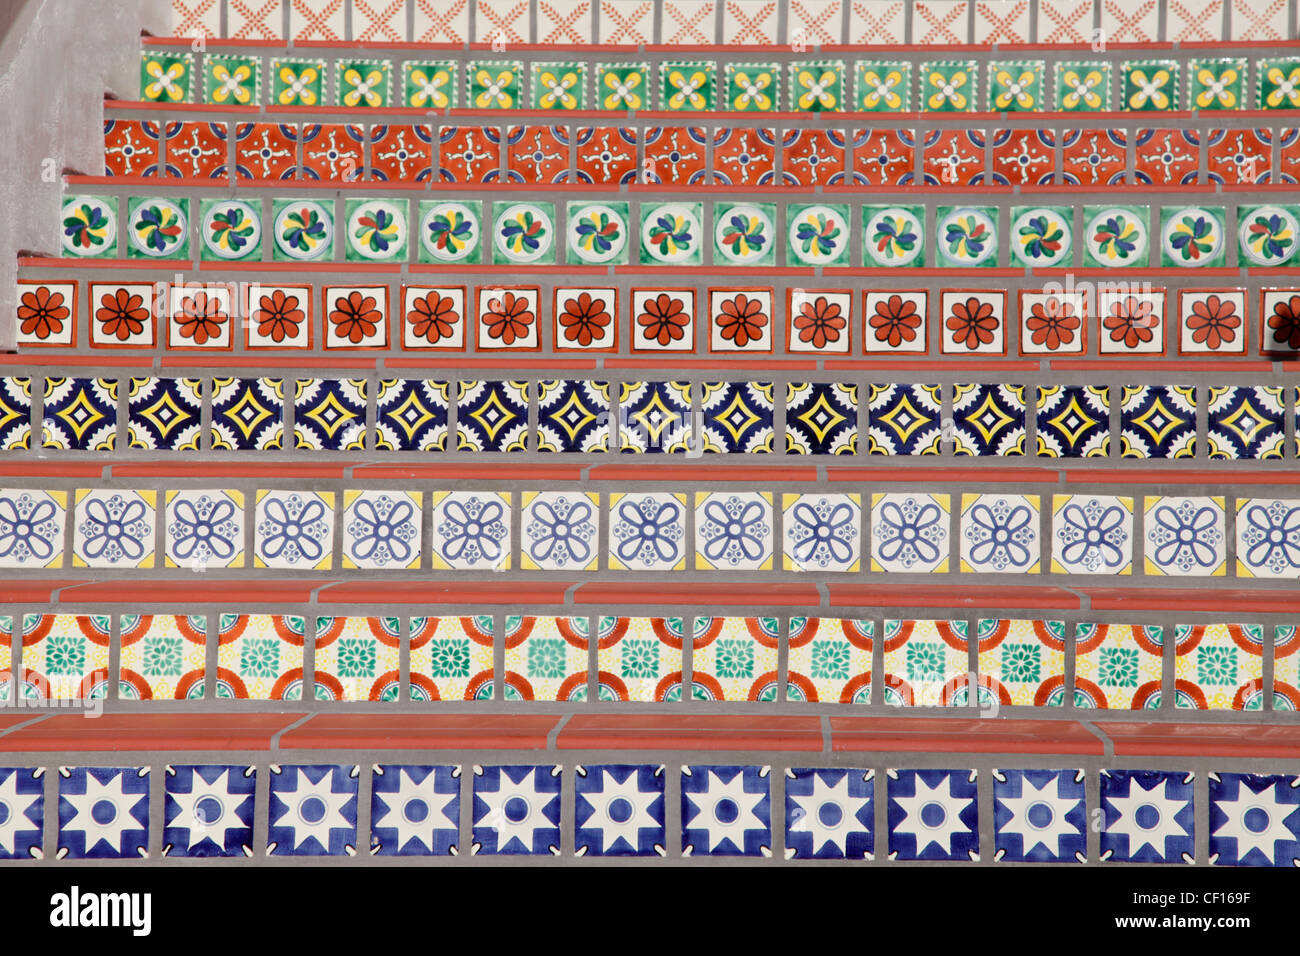 Decoradas en estilo español pasos en mosaico Foto de stock